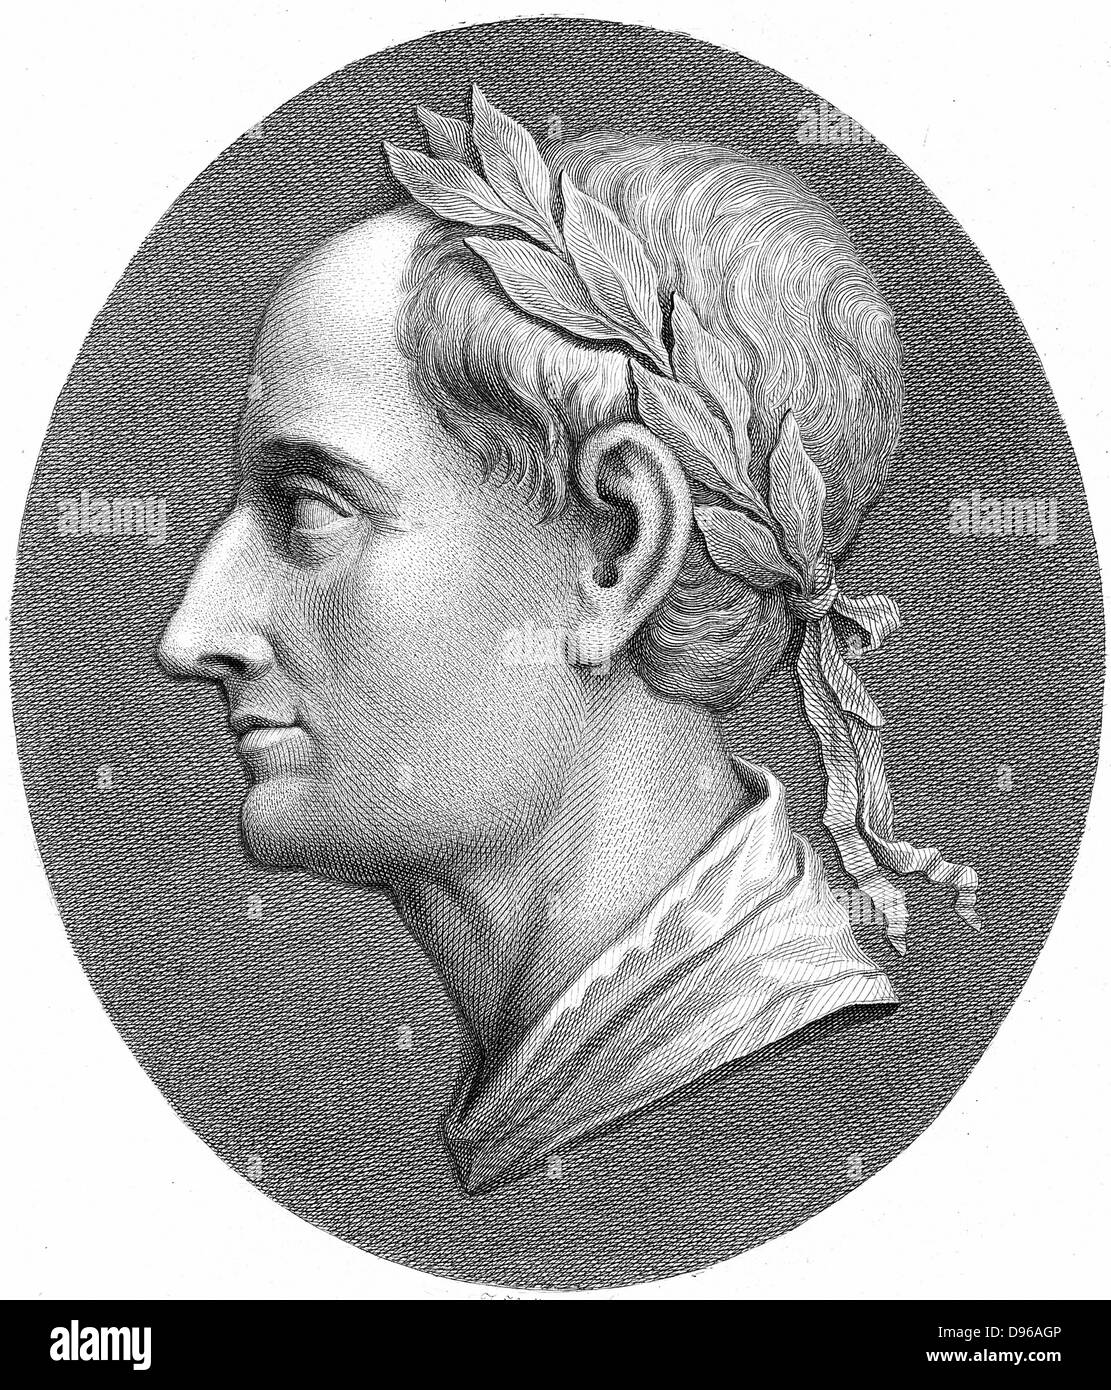 Augustus Caesar - Gaius Julius Caesar Octavianus (BC 63-14 AD), first Roman Emperor from 27 BC. Profile portrait wearing laurel wreath. Late 18th century copperplate engraving Stock Photo